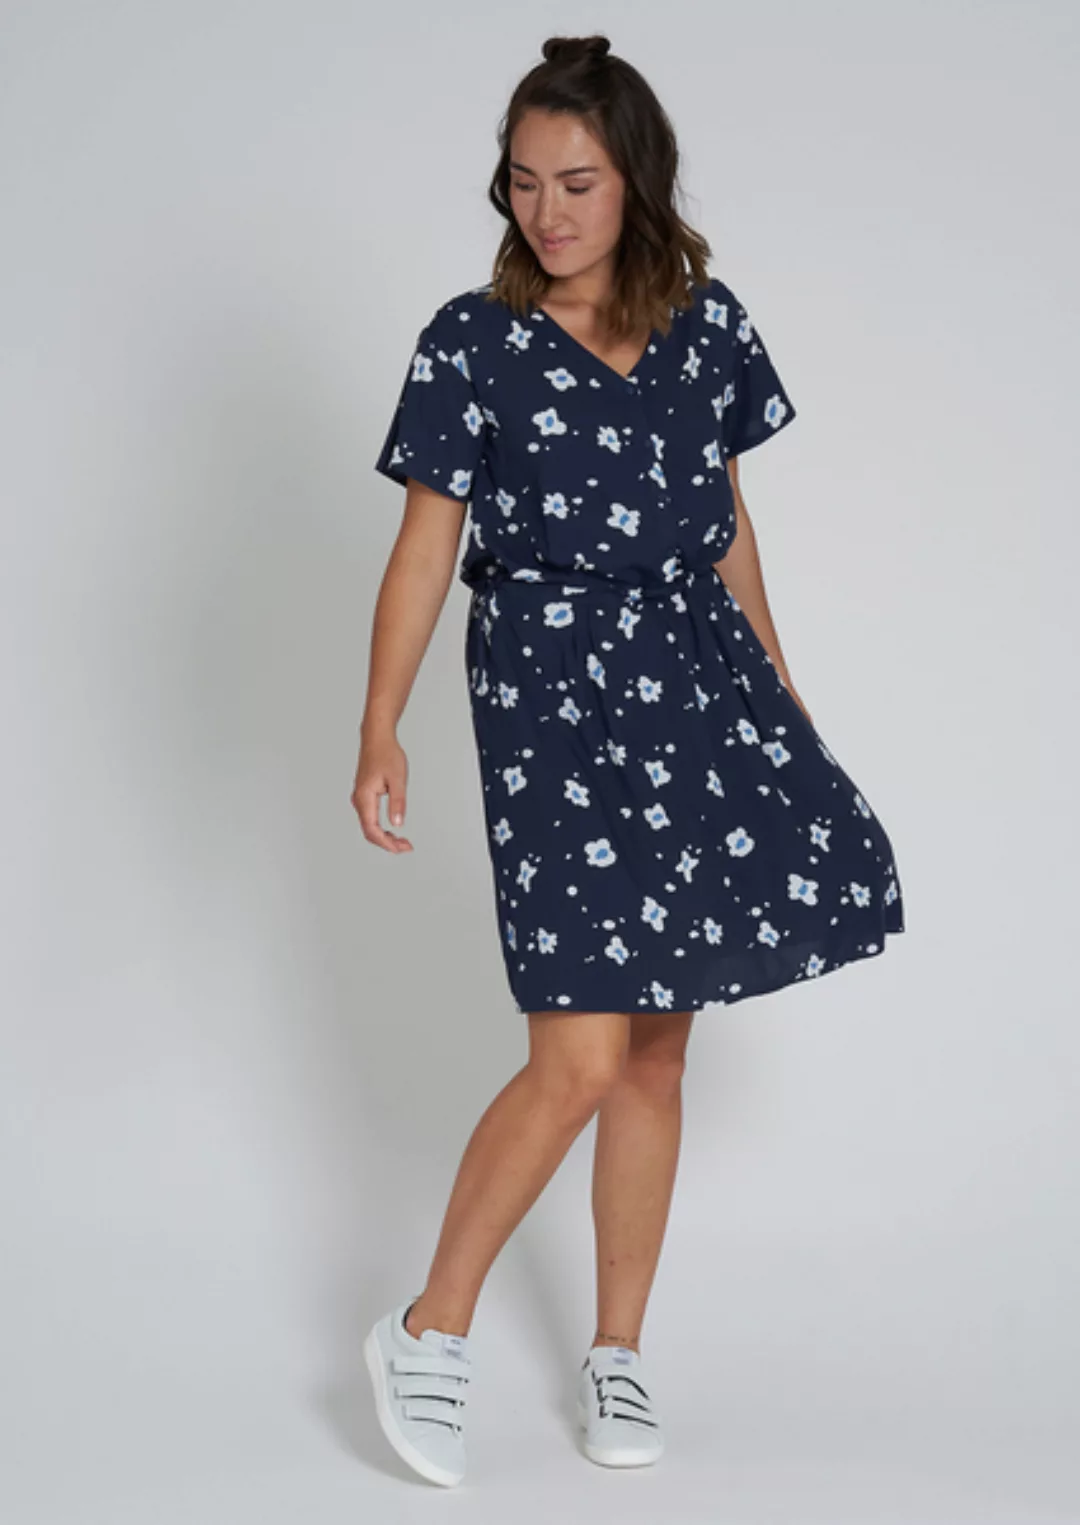 Frauen Kleid Aus Ecovero Mit Blumenprint | Ecovero Dress #Flowers günstig online kaufen